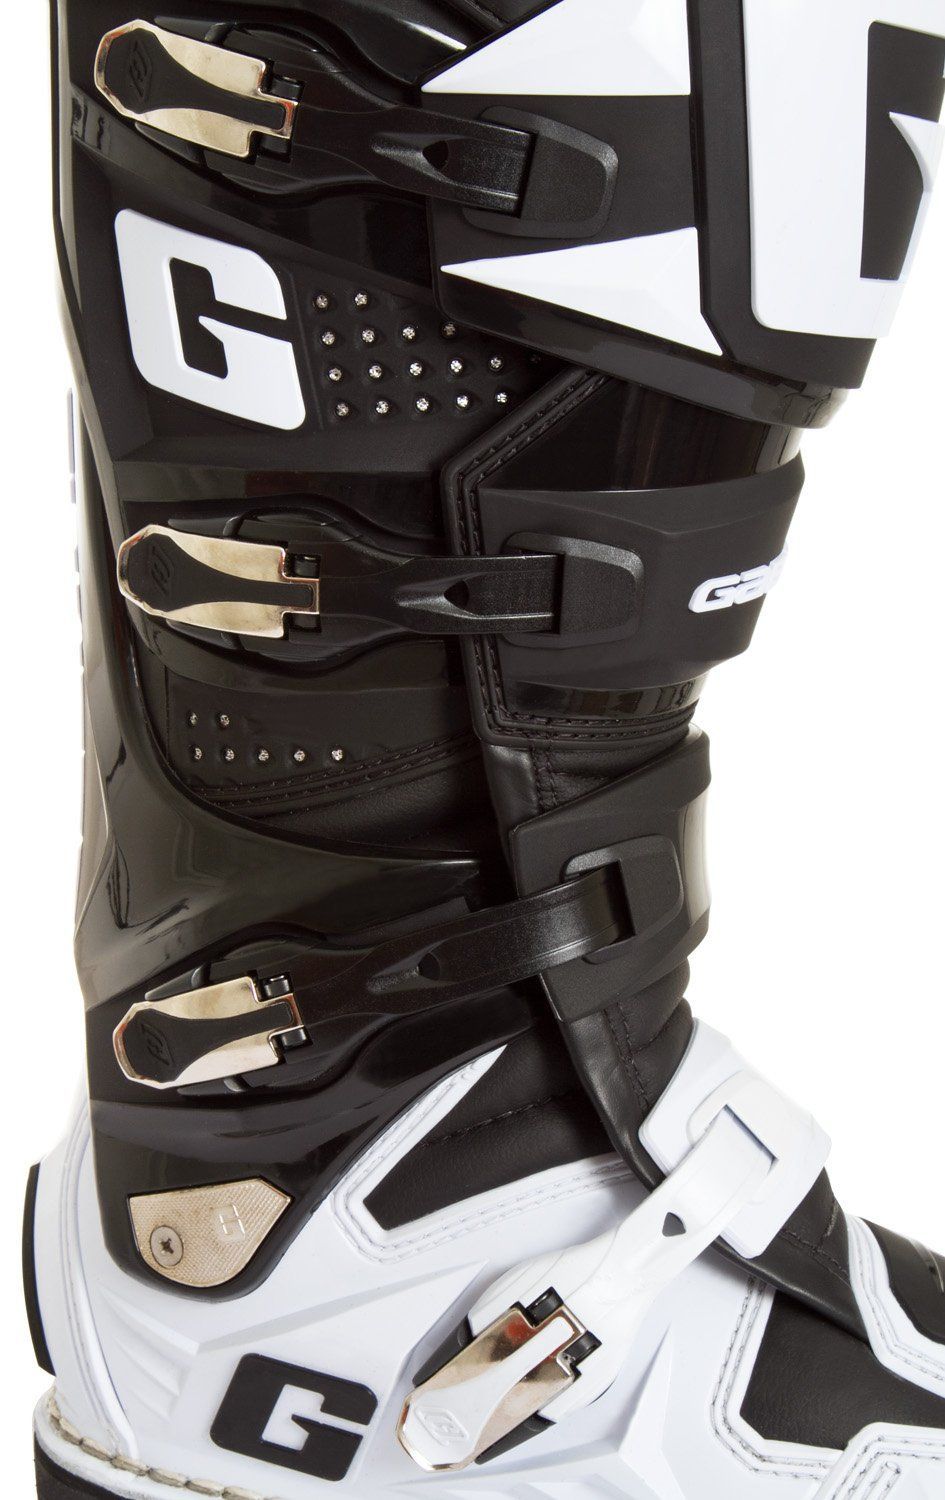 Gaerne SG-12 Men's Black/White Motocross Boots